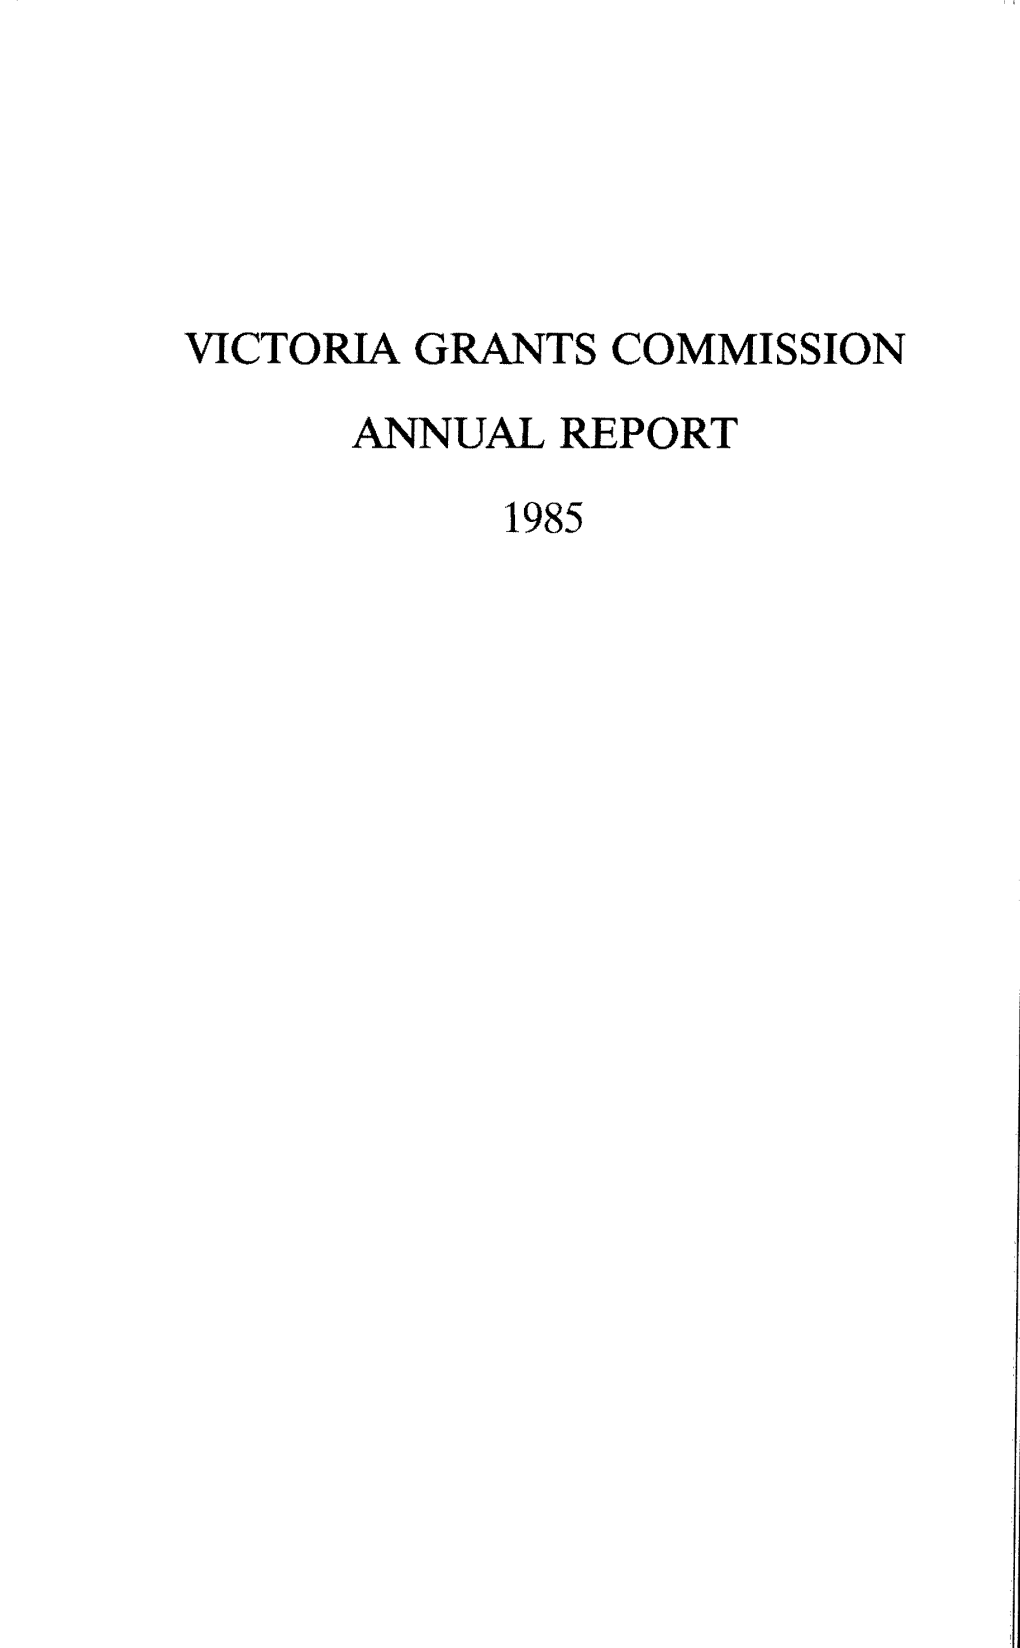 Victoria Grants Commission Annual Report 1985 Victoria